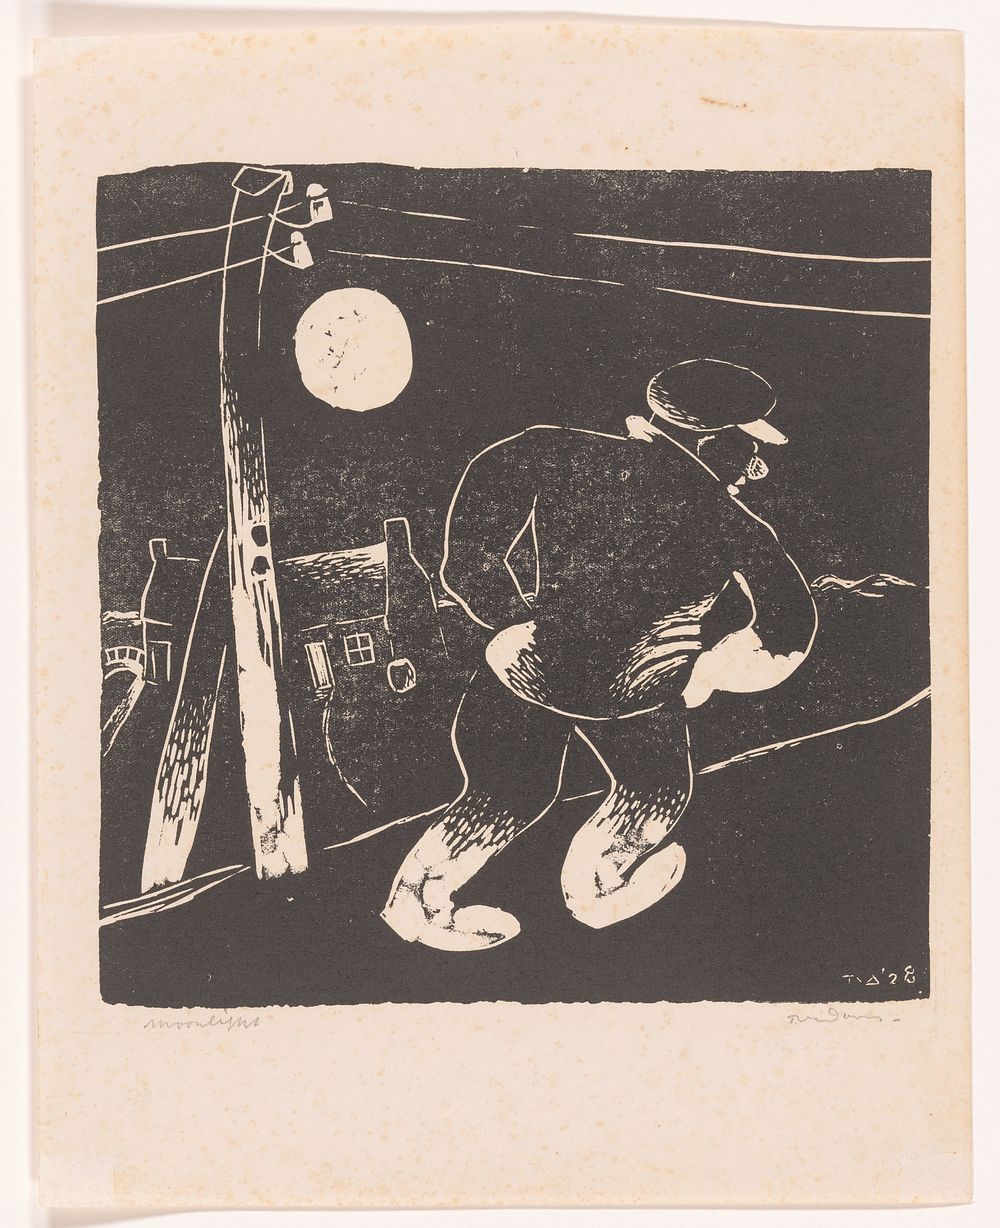 Moonlight (1928) by Tinus van Doorn